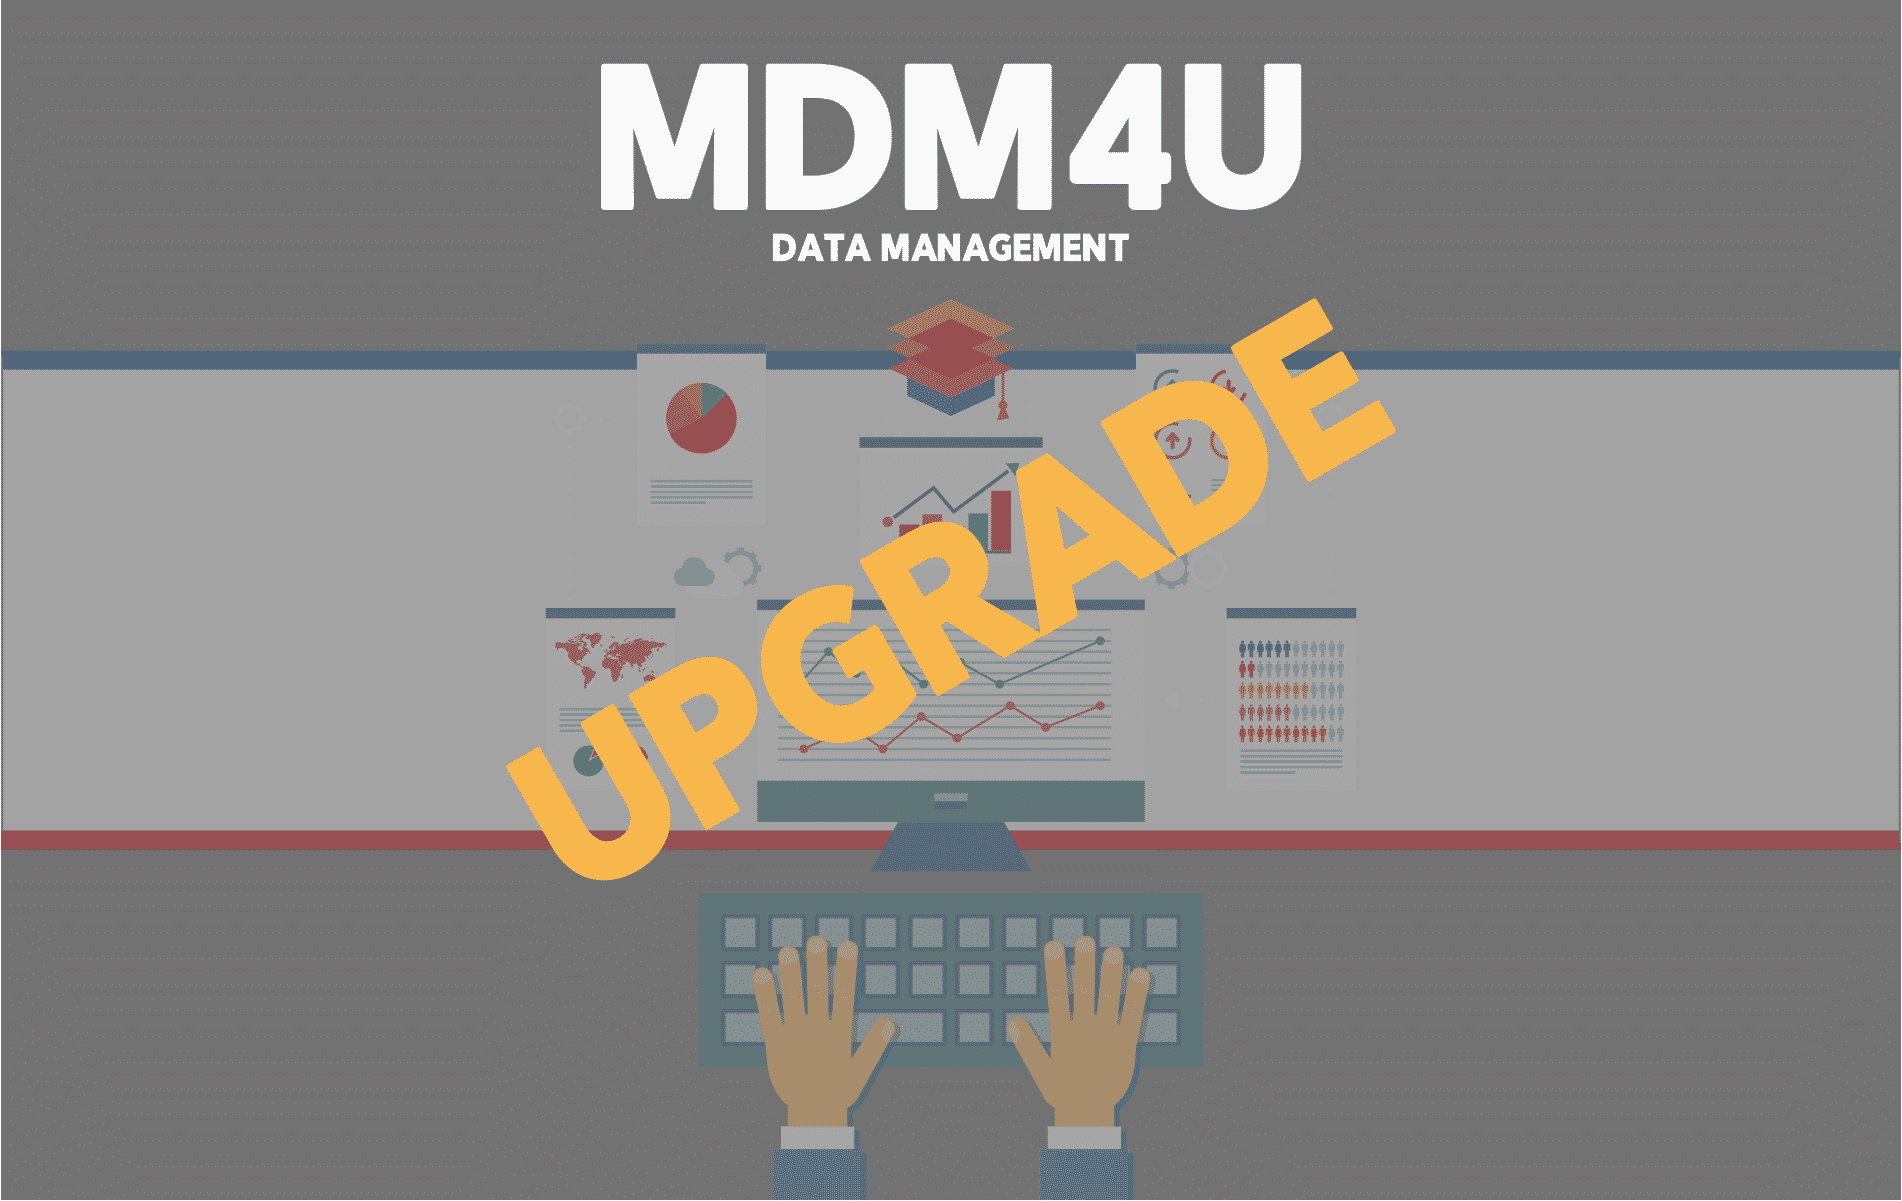 Upgrade MDM4U